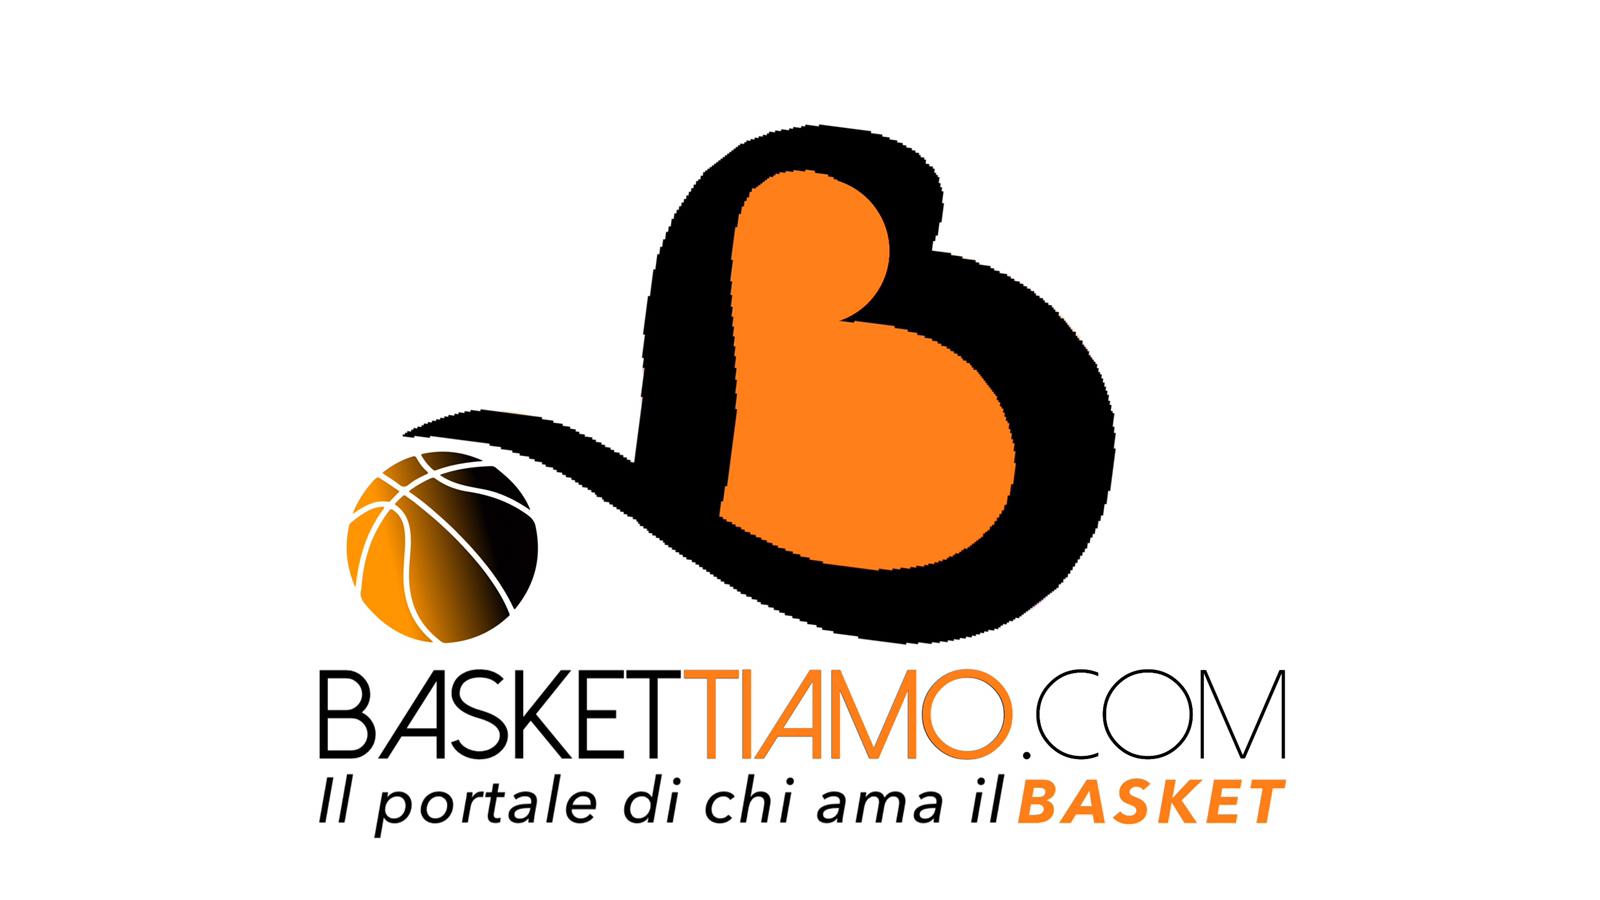 Baskettiamo: Notizie, Analisi e Interviste sul Basket Italiano e Internazionale